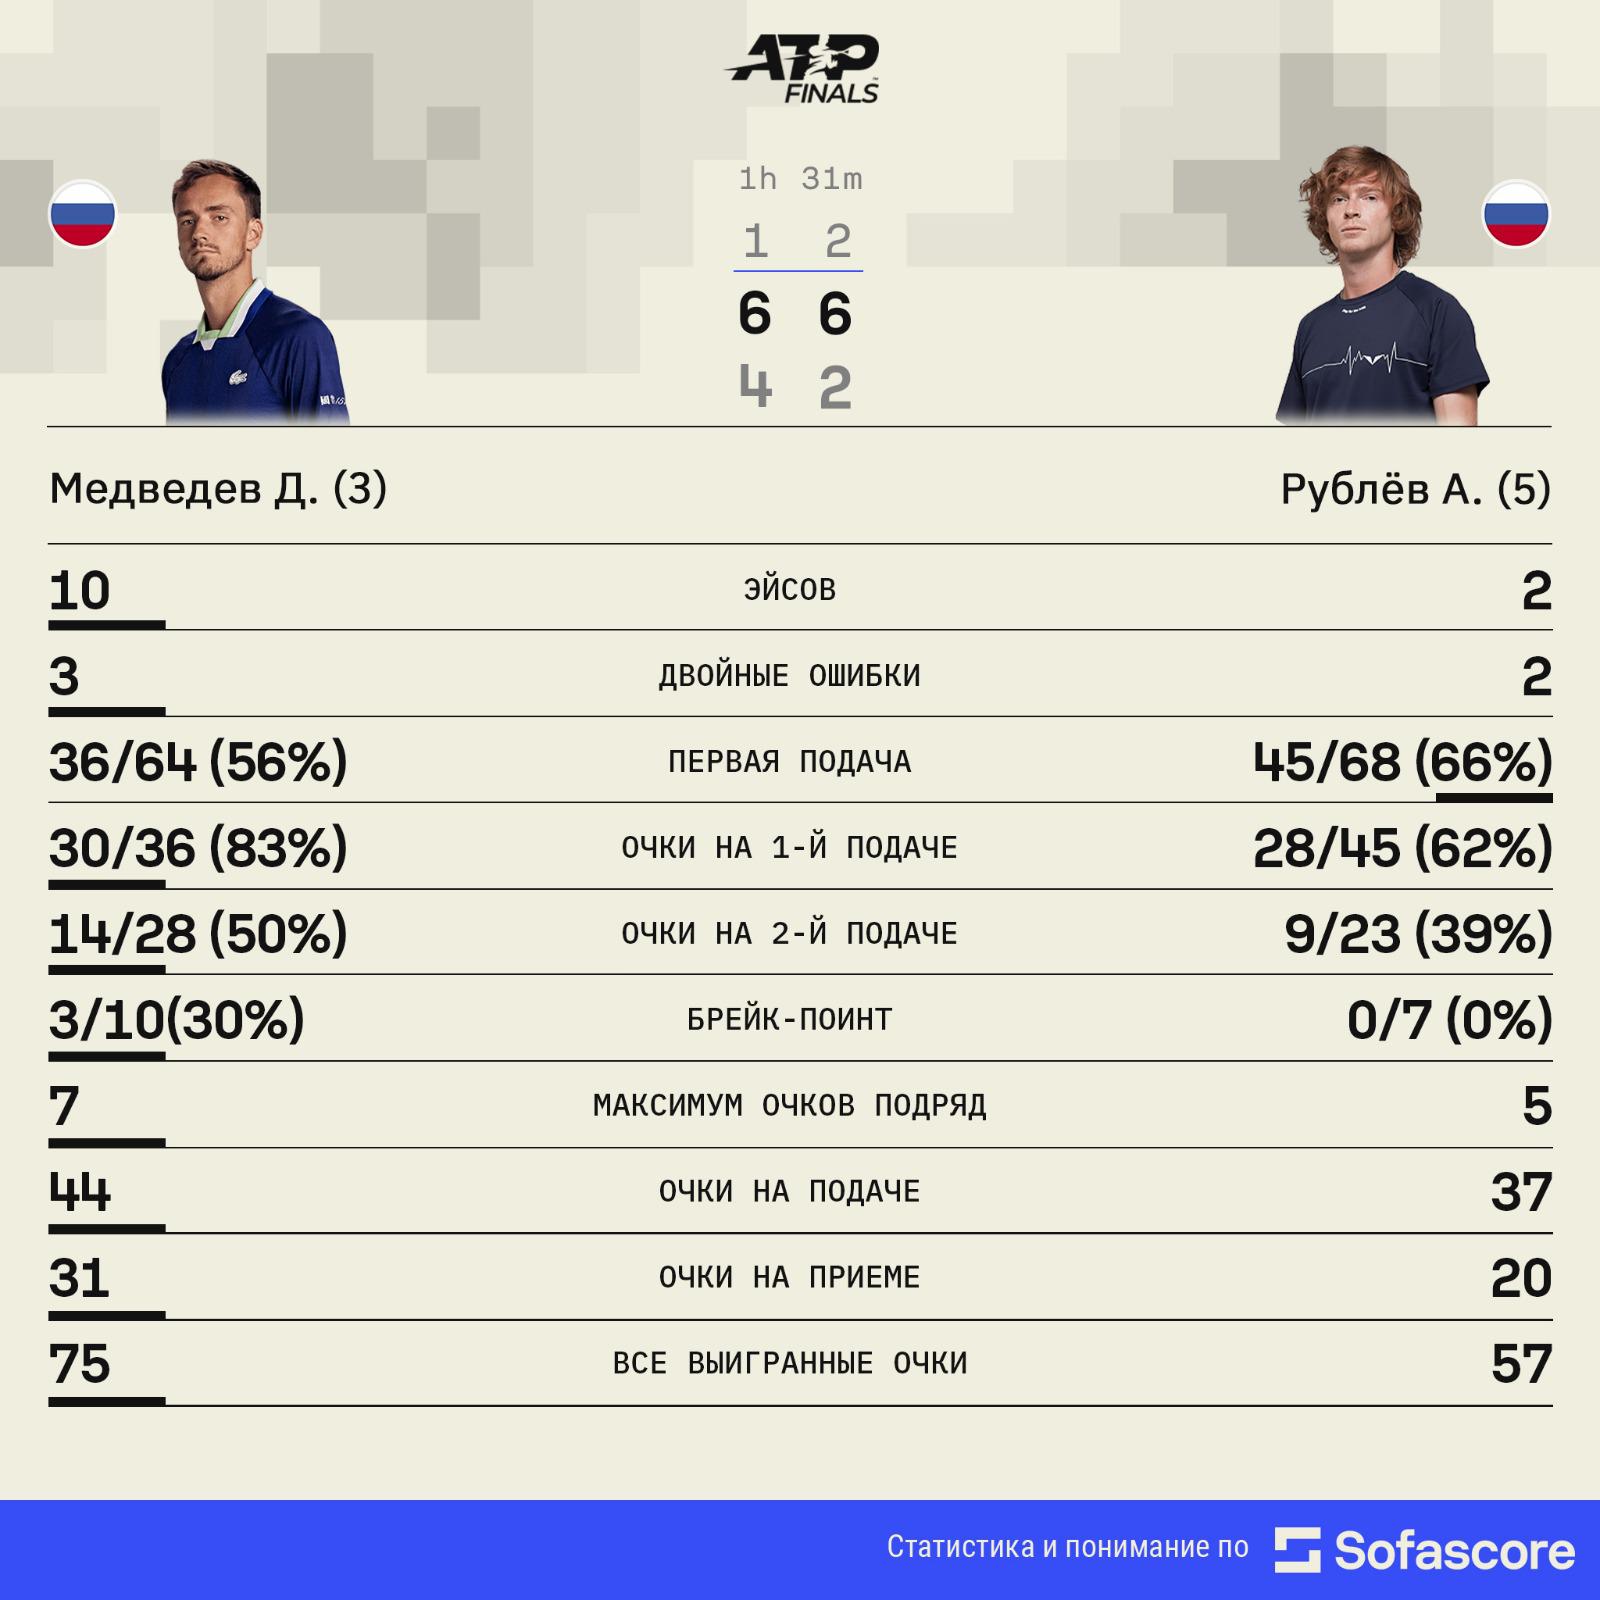 Медведев победил Рублева на Итоговом турнире ATP